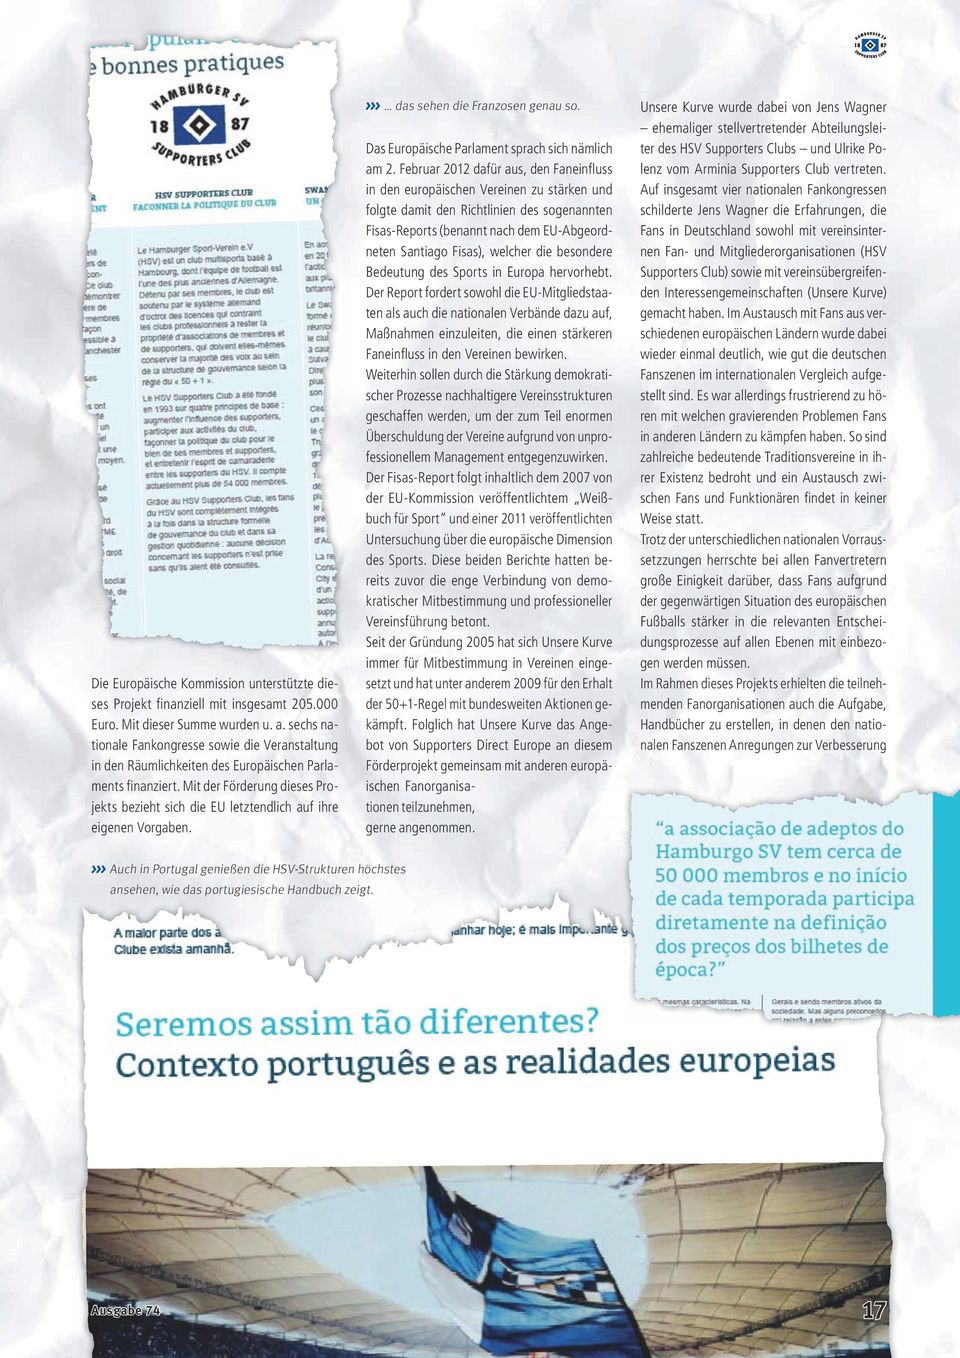 Mit der Förderung dieses Projekts bezieht sich die EU letztendlich auf ihre eigenen Vorgaben. Auch in Portugal genießen die HSV-Strukturen höchstes ansehen, wie das portugiesische Handbuch zeigt.